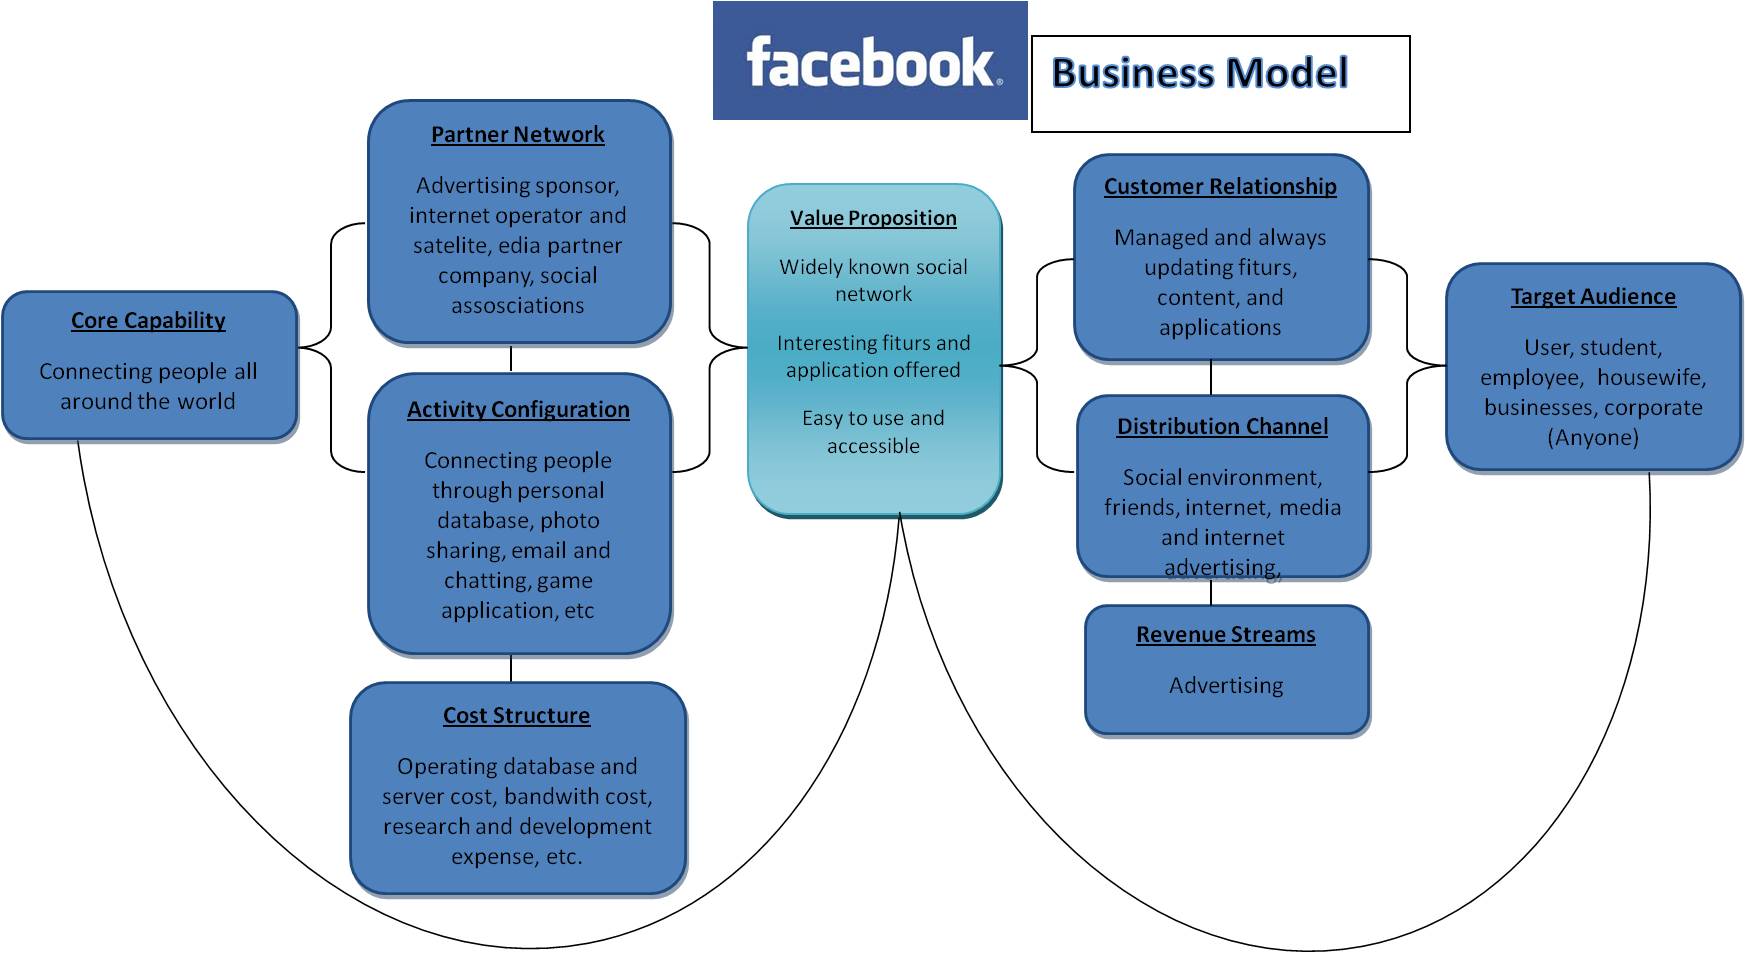 fb-business-model.jpg